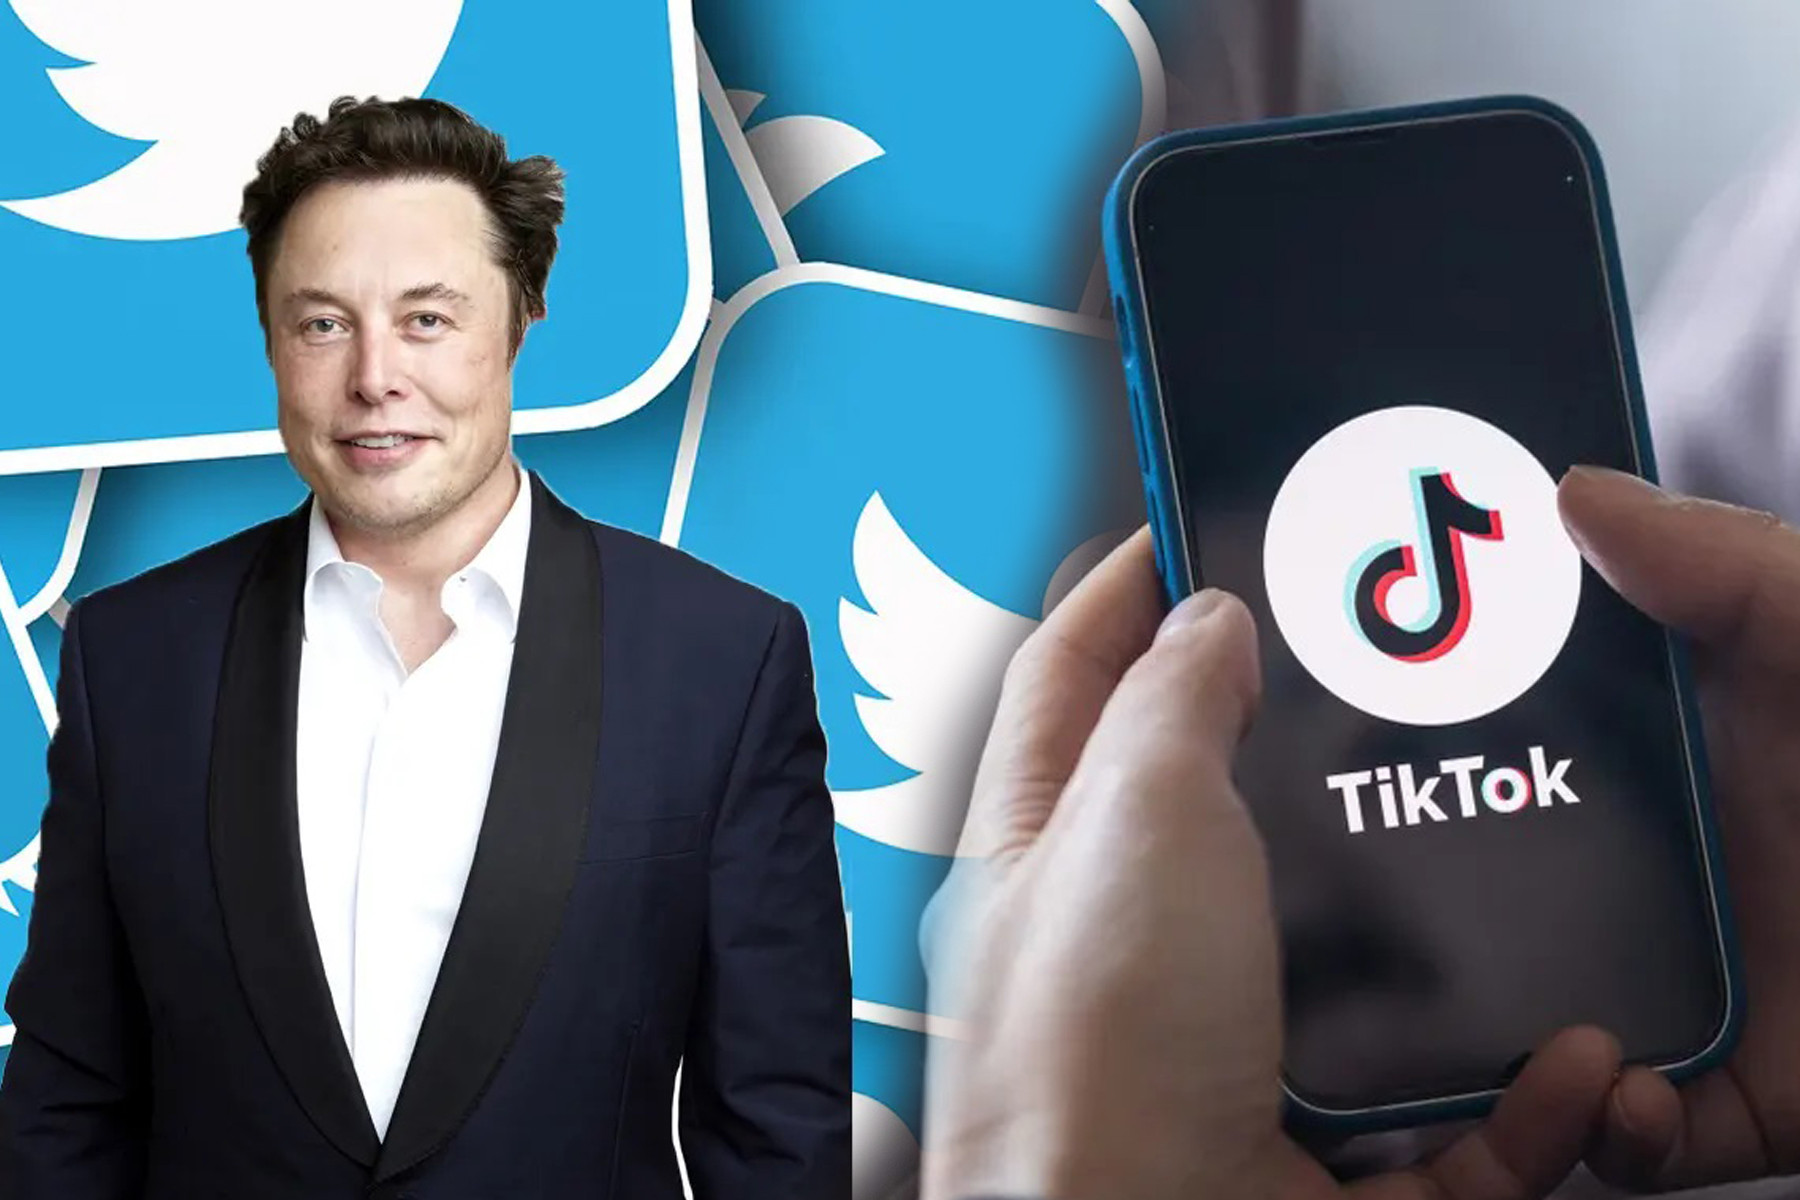 Thêm một quốc gia cấm TikTok, Elon Musk hé lộ CEO mới cho Twitter